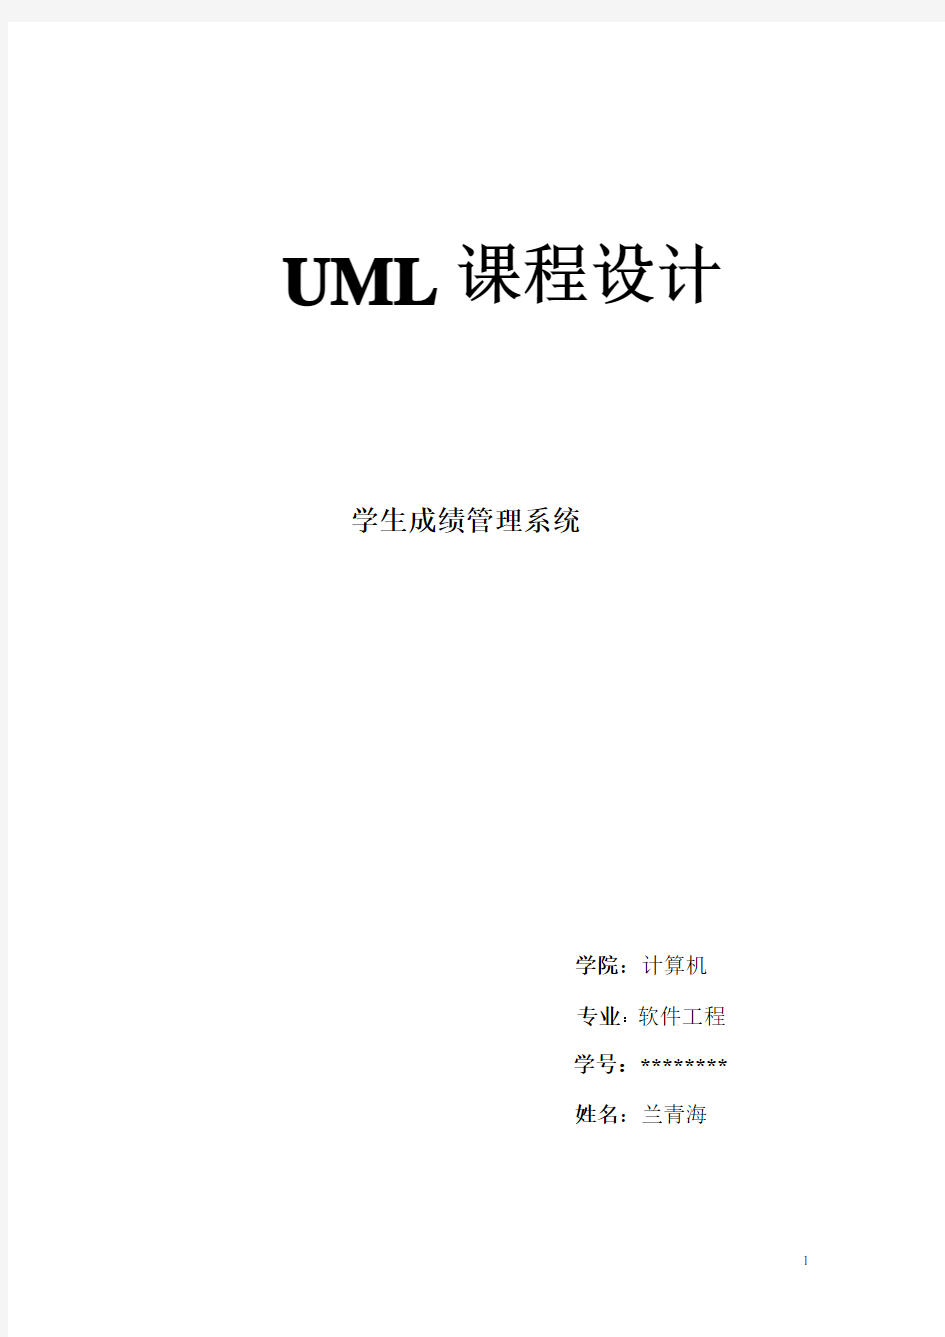 学生成绩管理系统UML课程设计